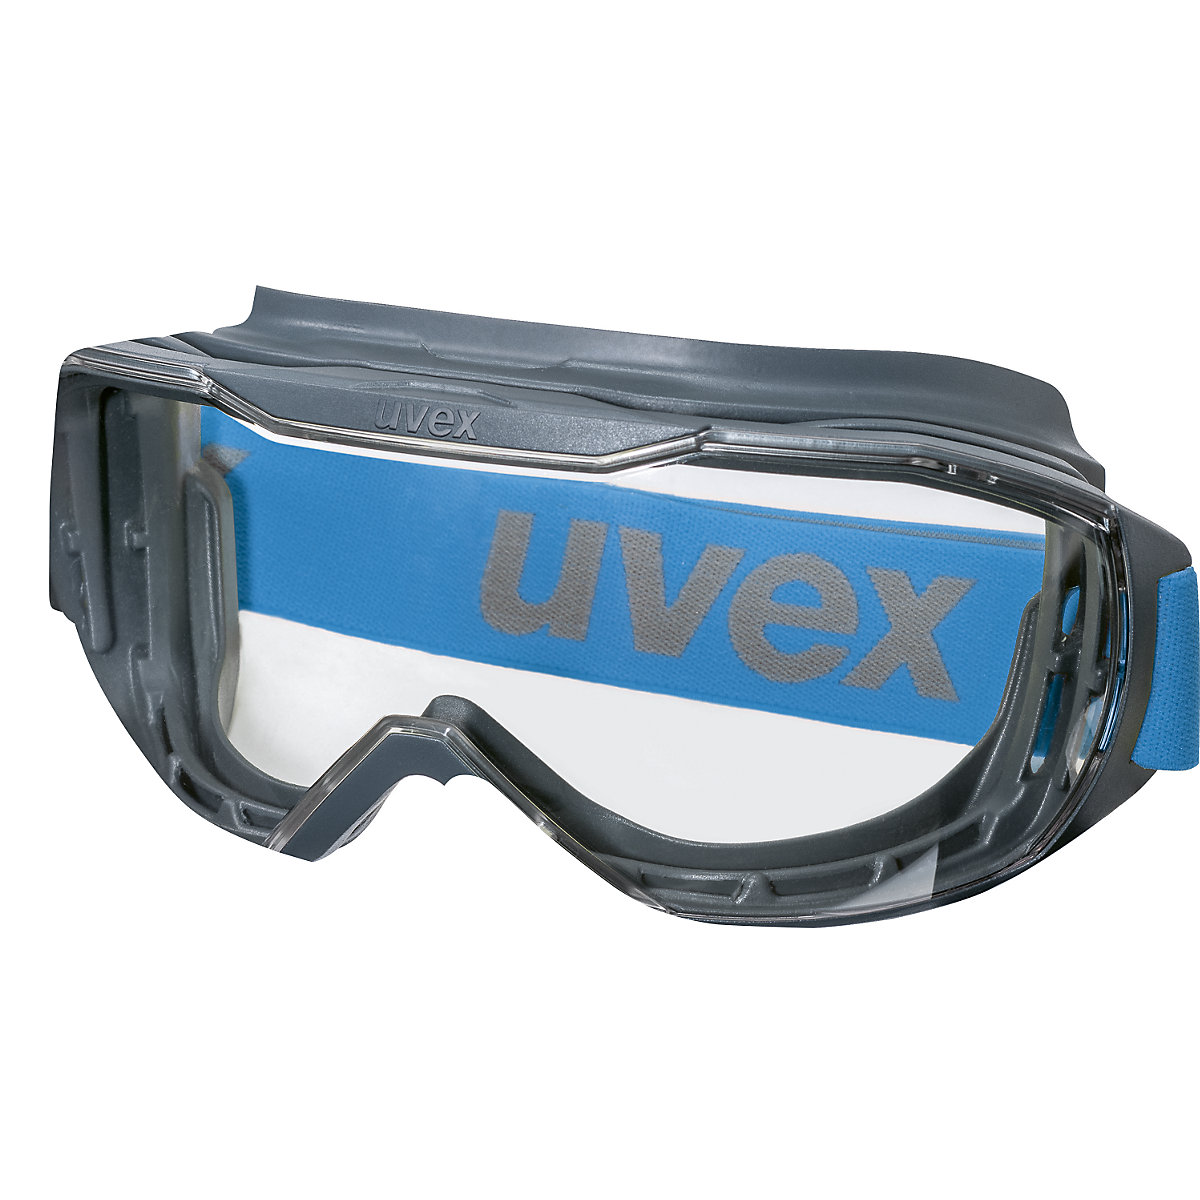 Velika zaščitna očala megasonic – Uvex